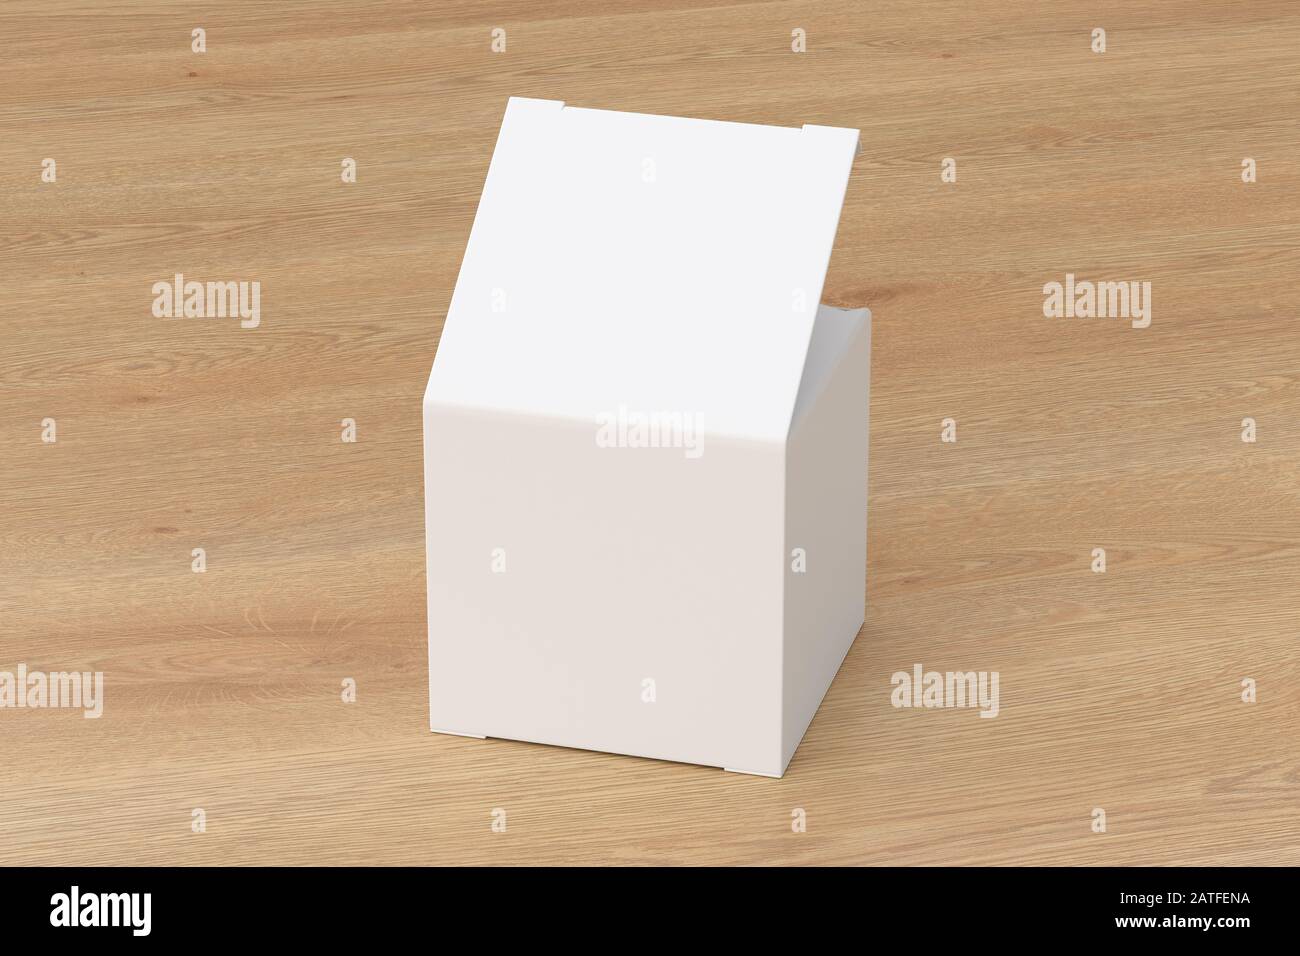 Boîte-cadeau blanche blanche vierge avec couvercle à rabat ouvert sur fond en bois. Chemin de détourage autour de la maquette de boîte Banque D'Images